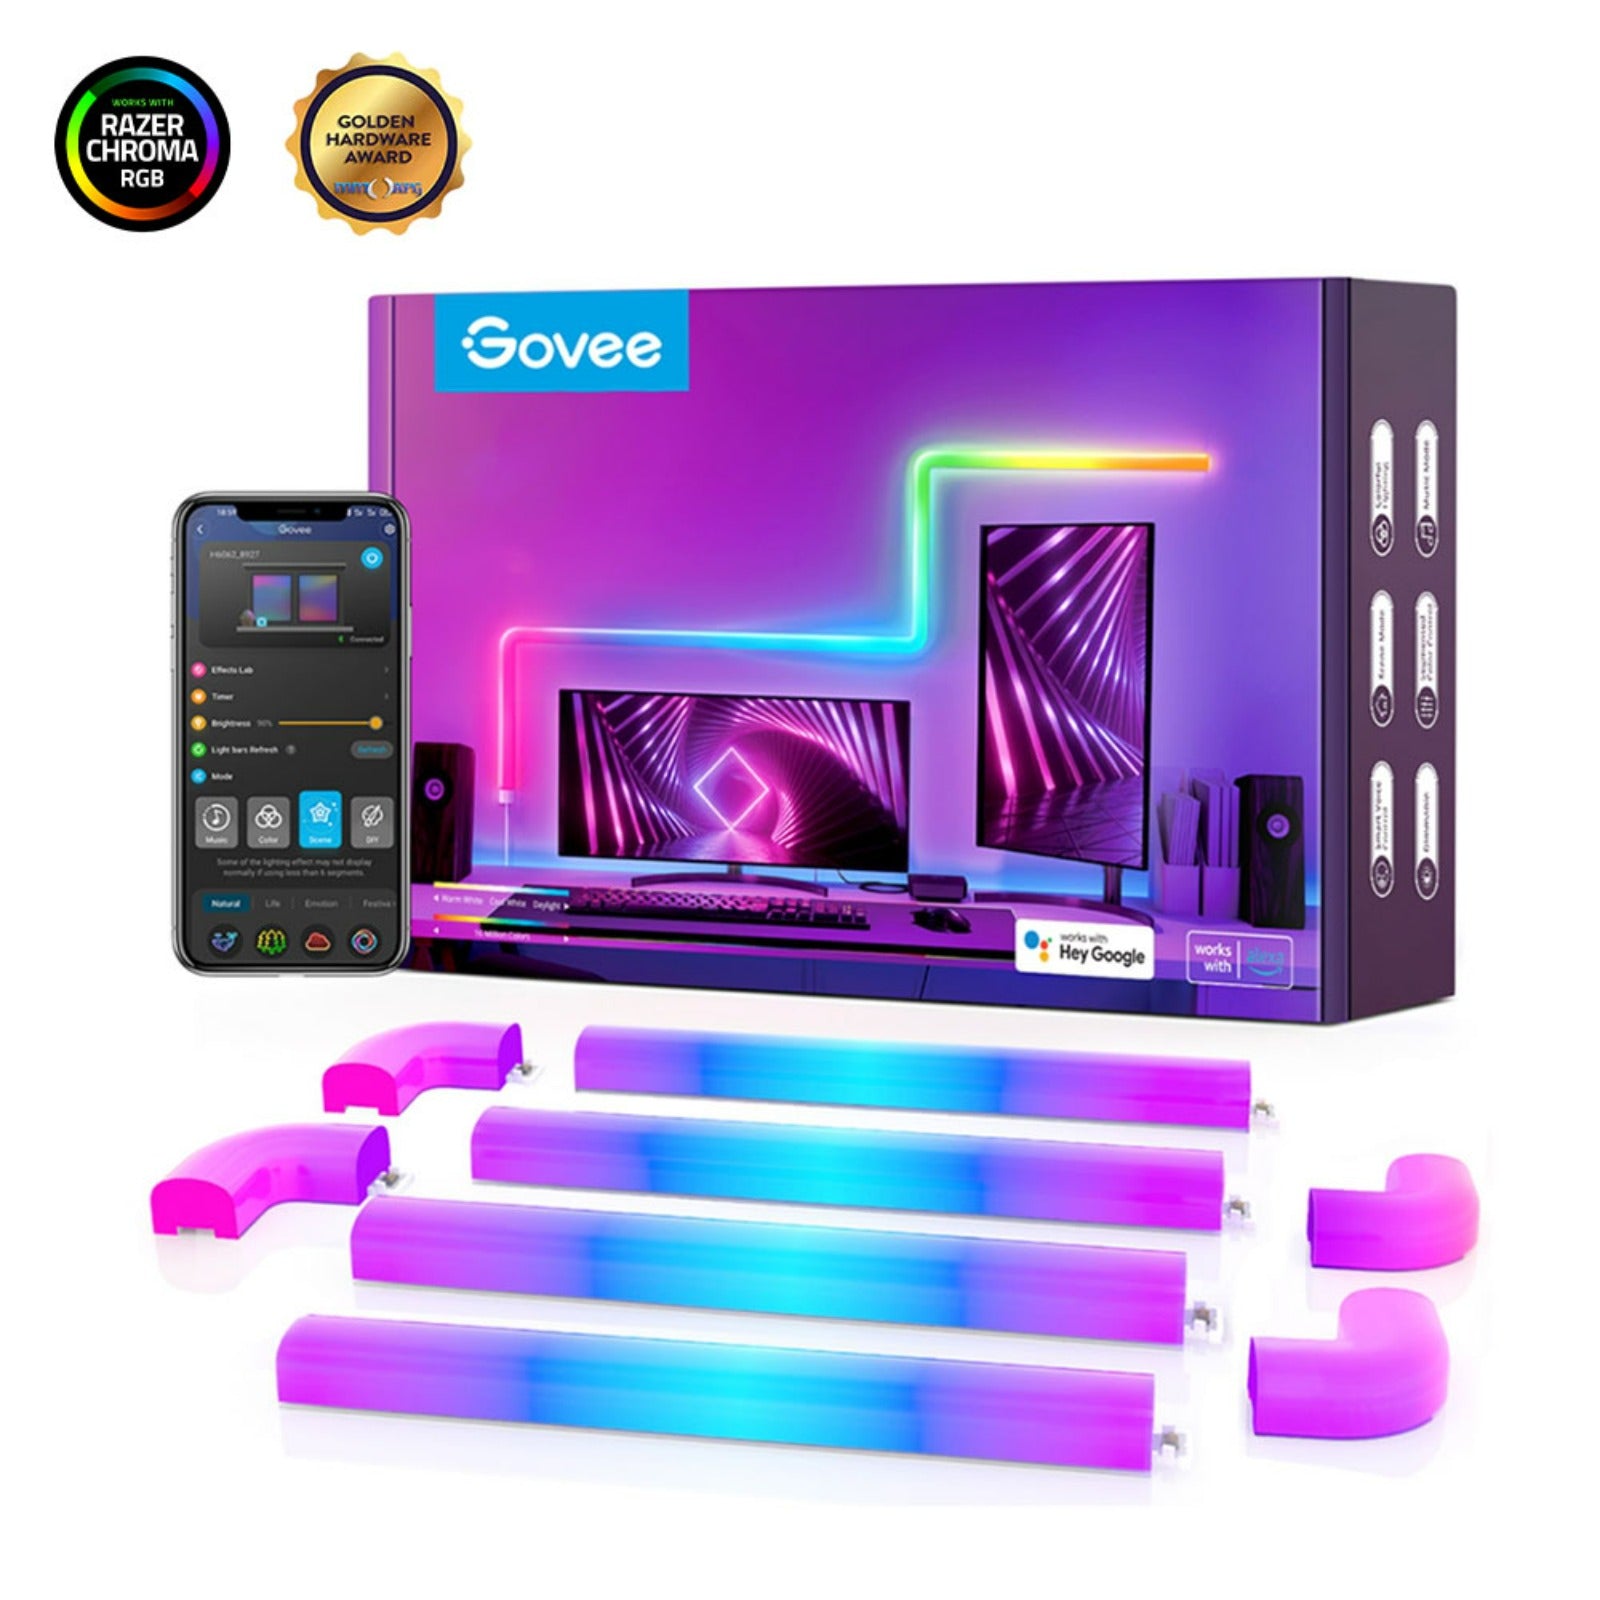 Ruban LED Govee Neon - 3m, connecté (Vendeur tiers) –